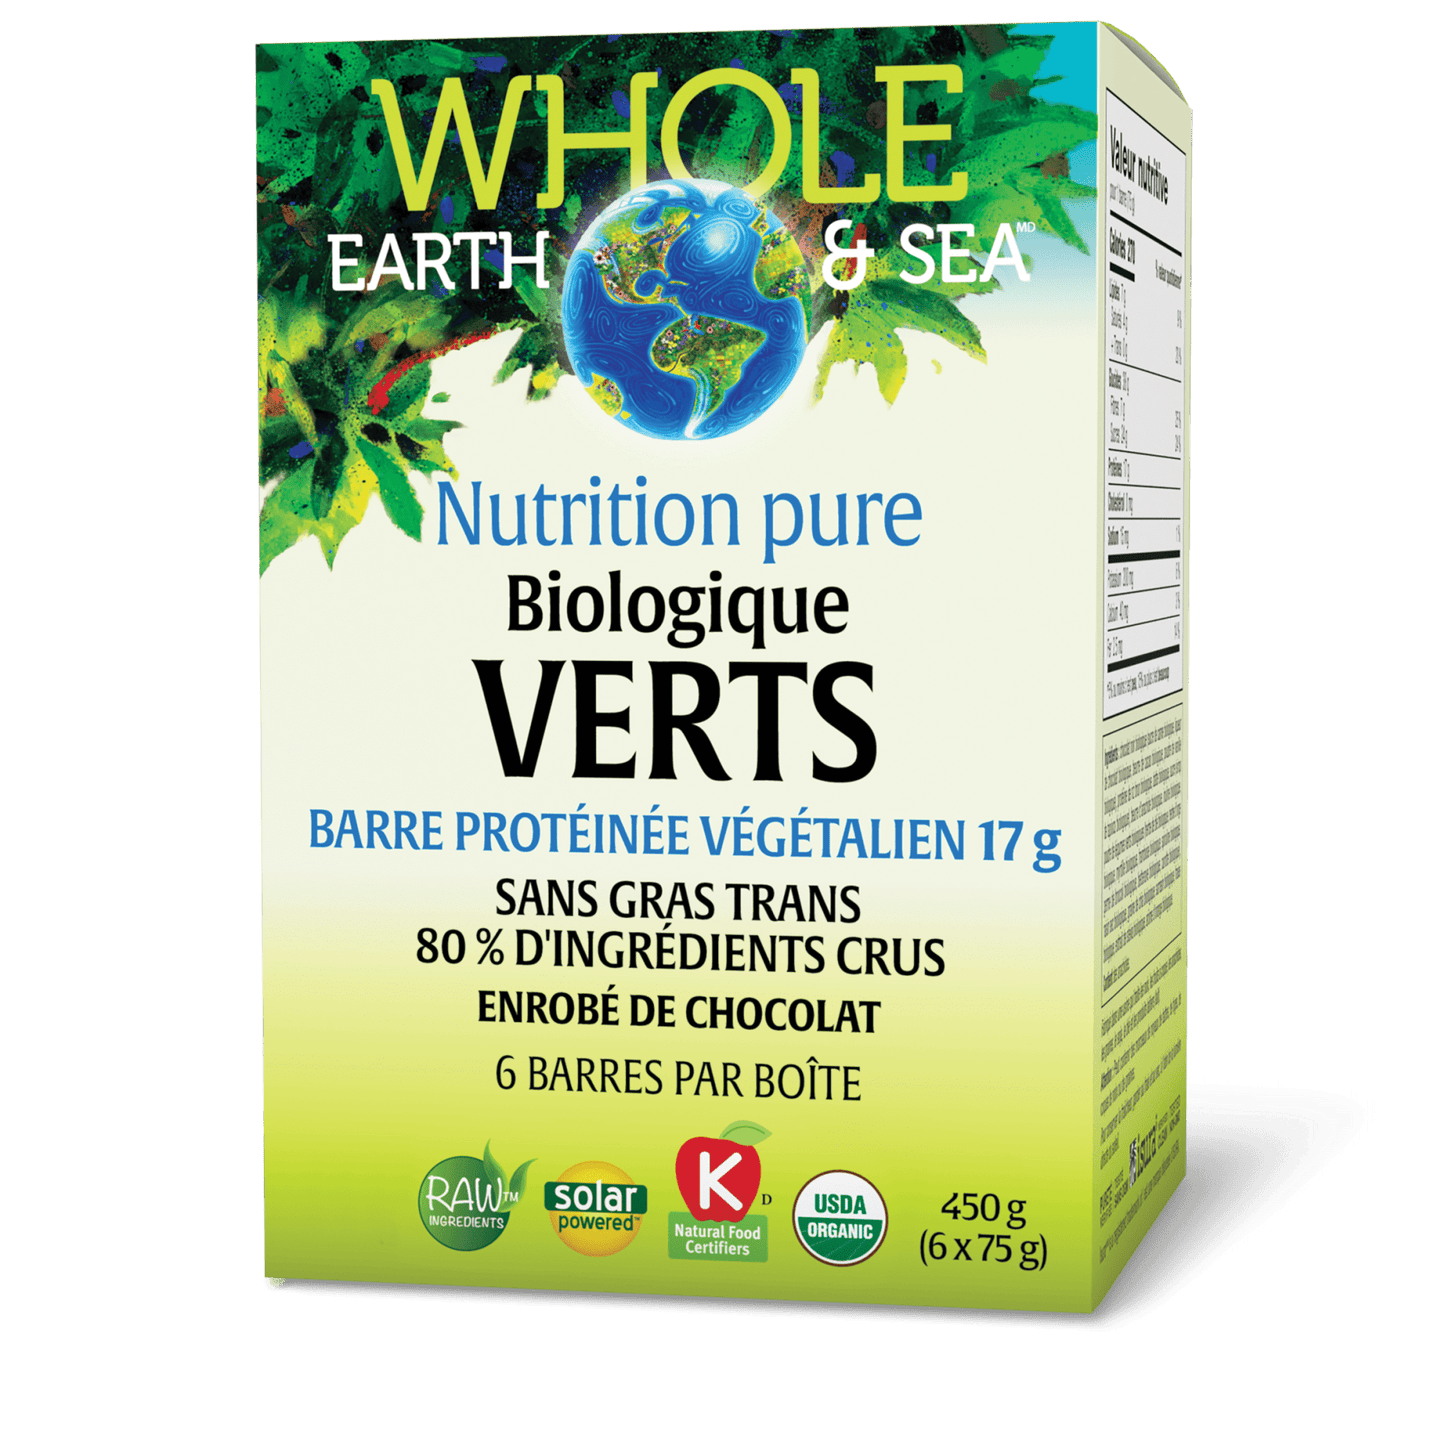 Barre protéinée biologique Végétalien Verts 17 mg, Whole Earth & Sea, Whole Earth & Sea®|v|image|35506